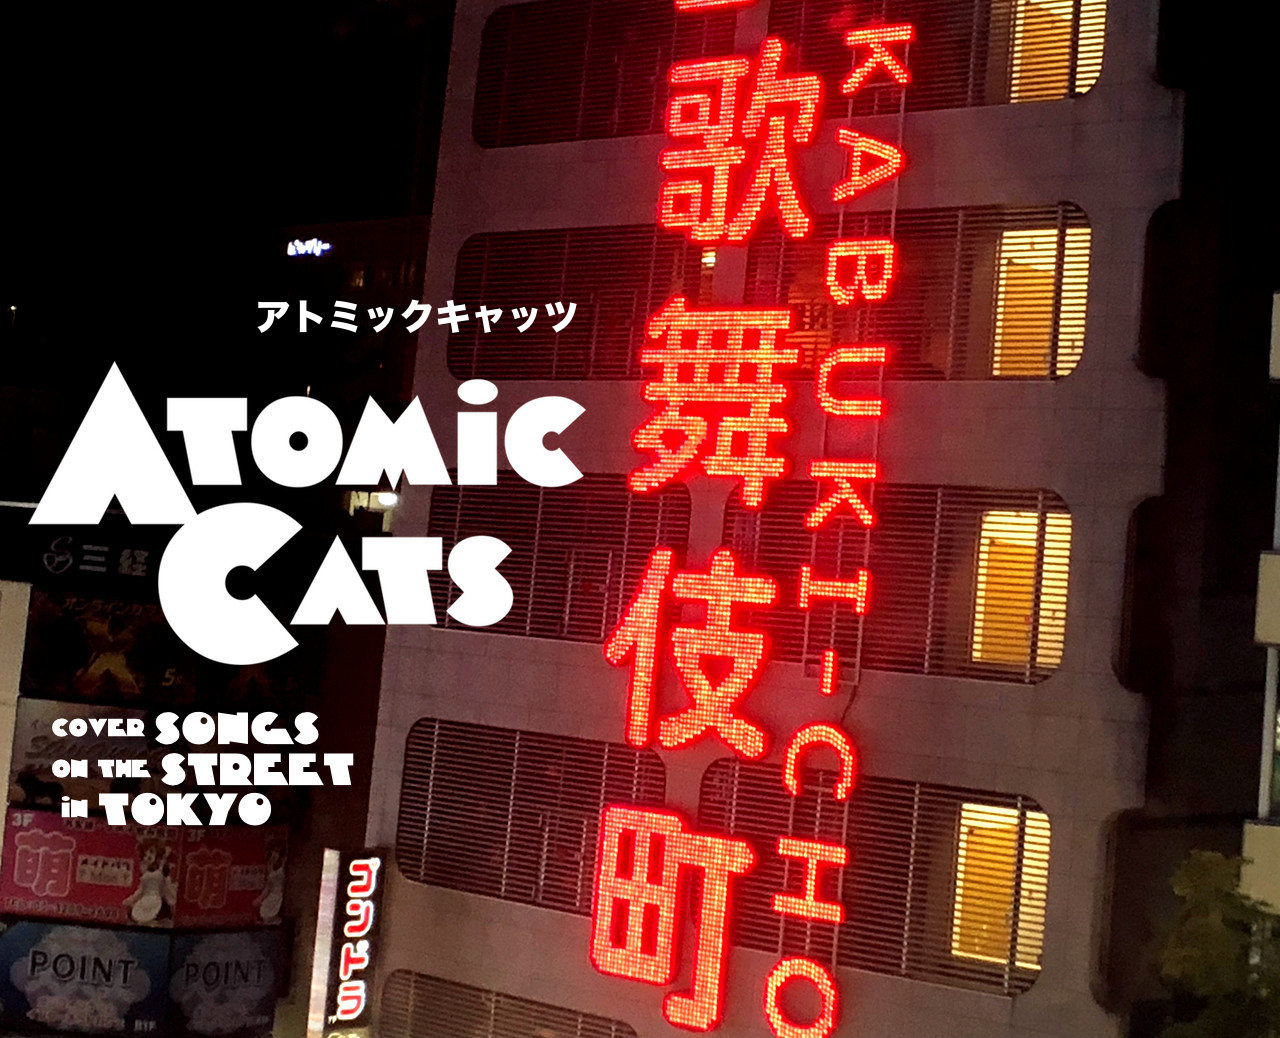 Atomic Cats - TalkBox Harmony from Tokyo